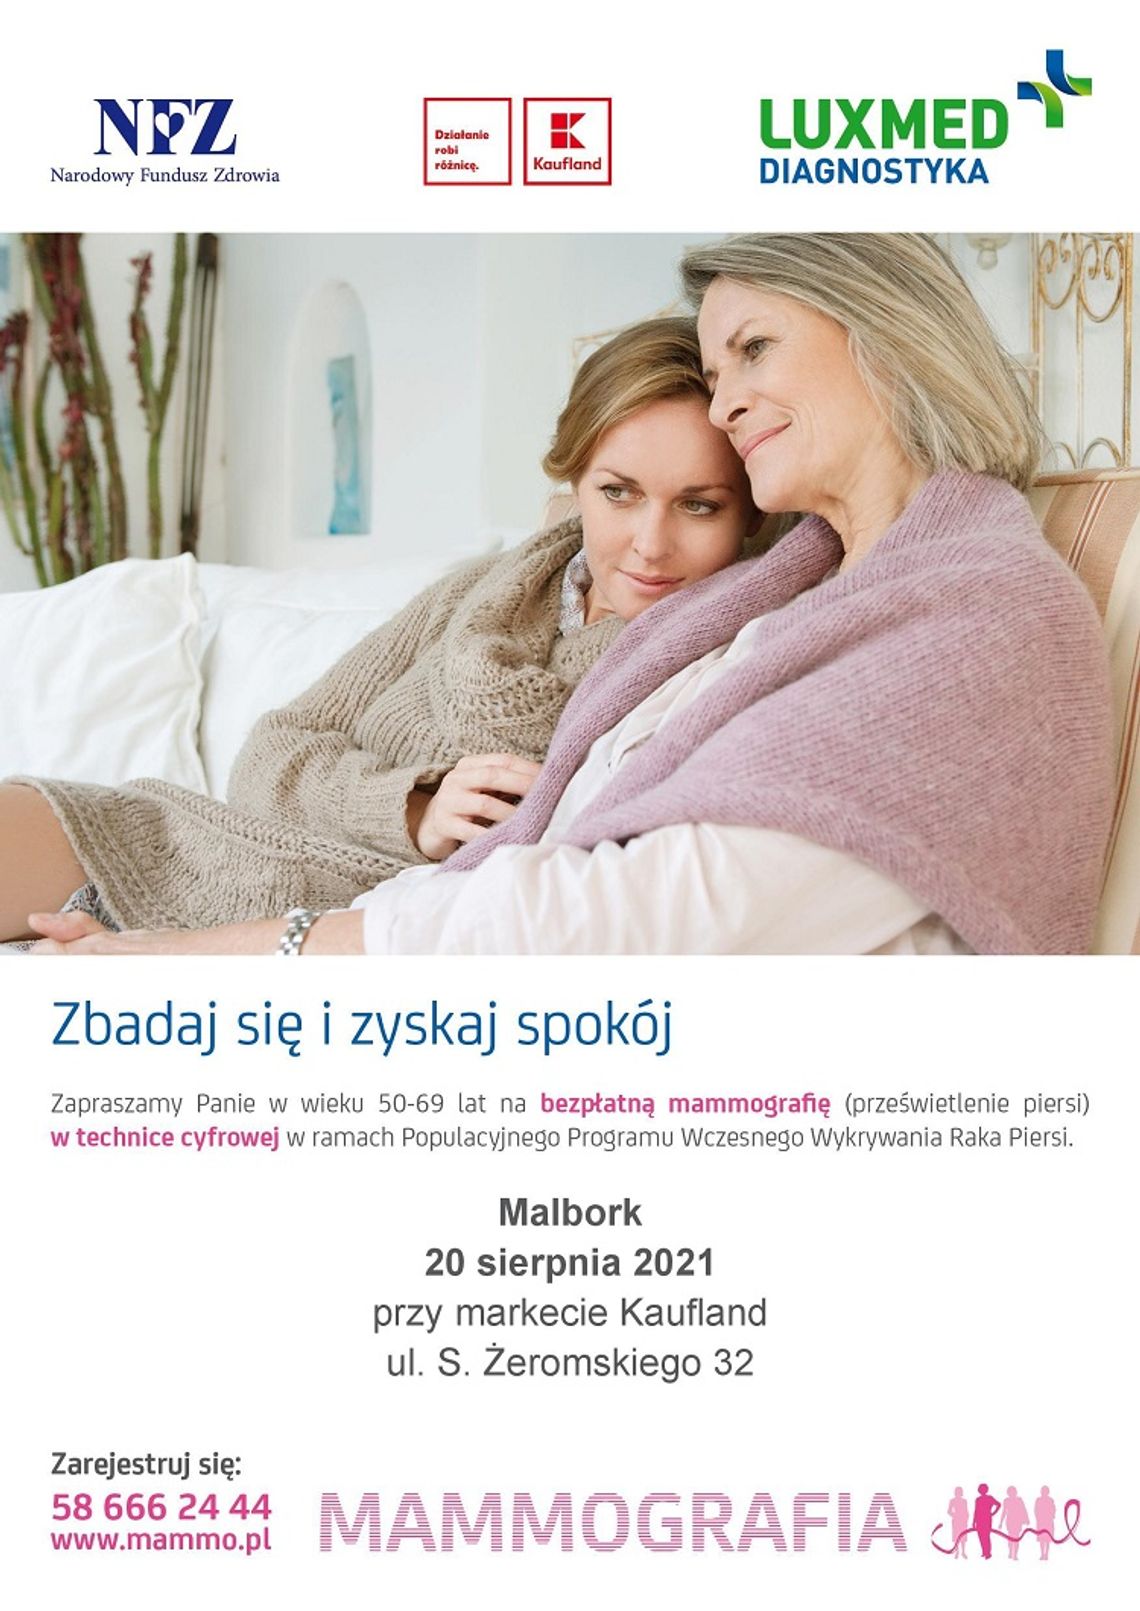 Bezpłatna mammografia w mobilnej pracowni mammograficznej w Malborku